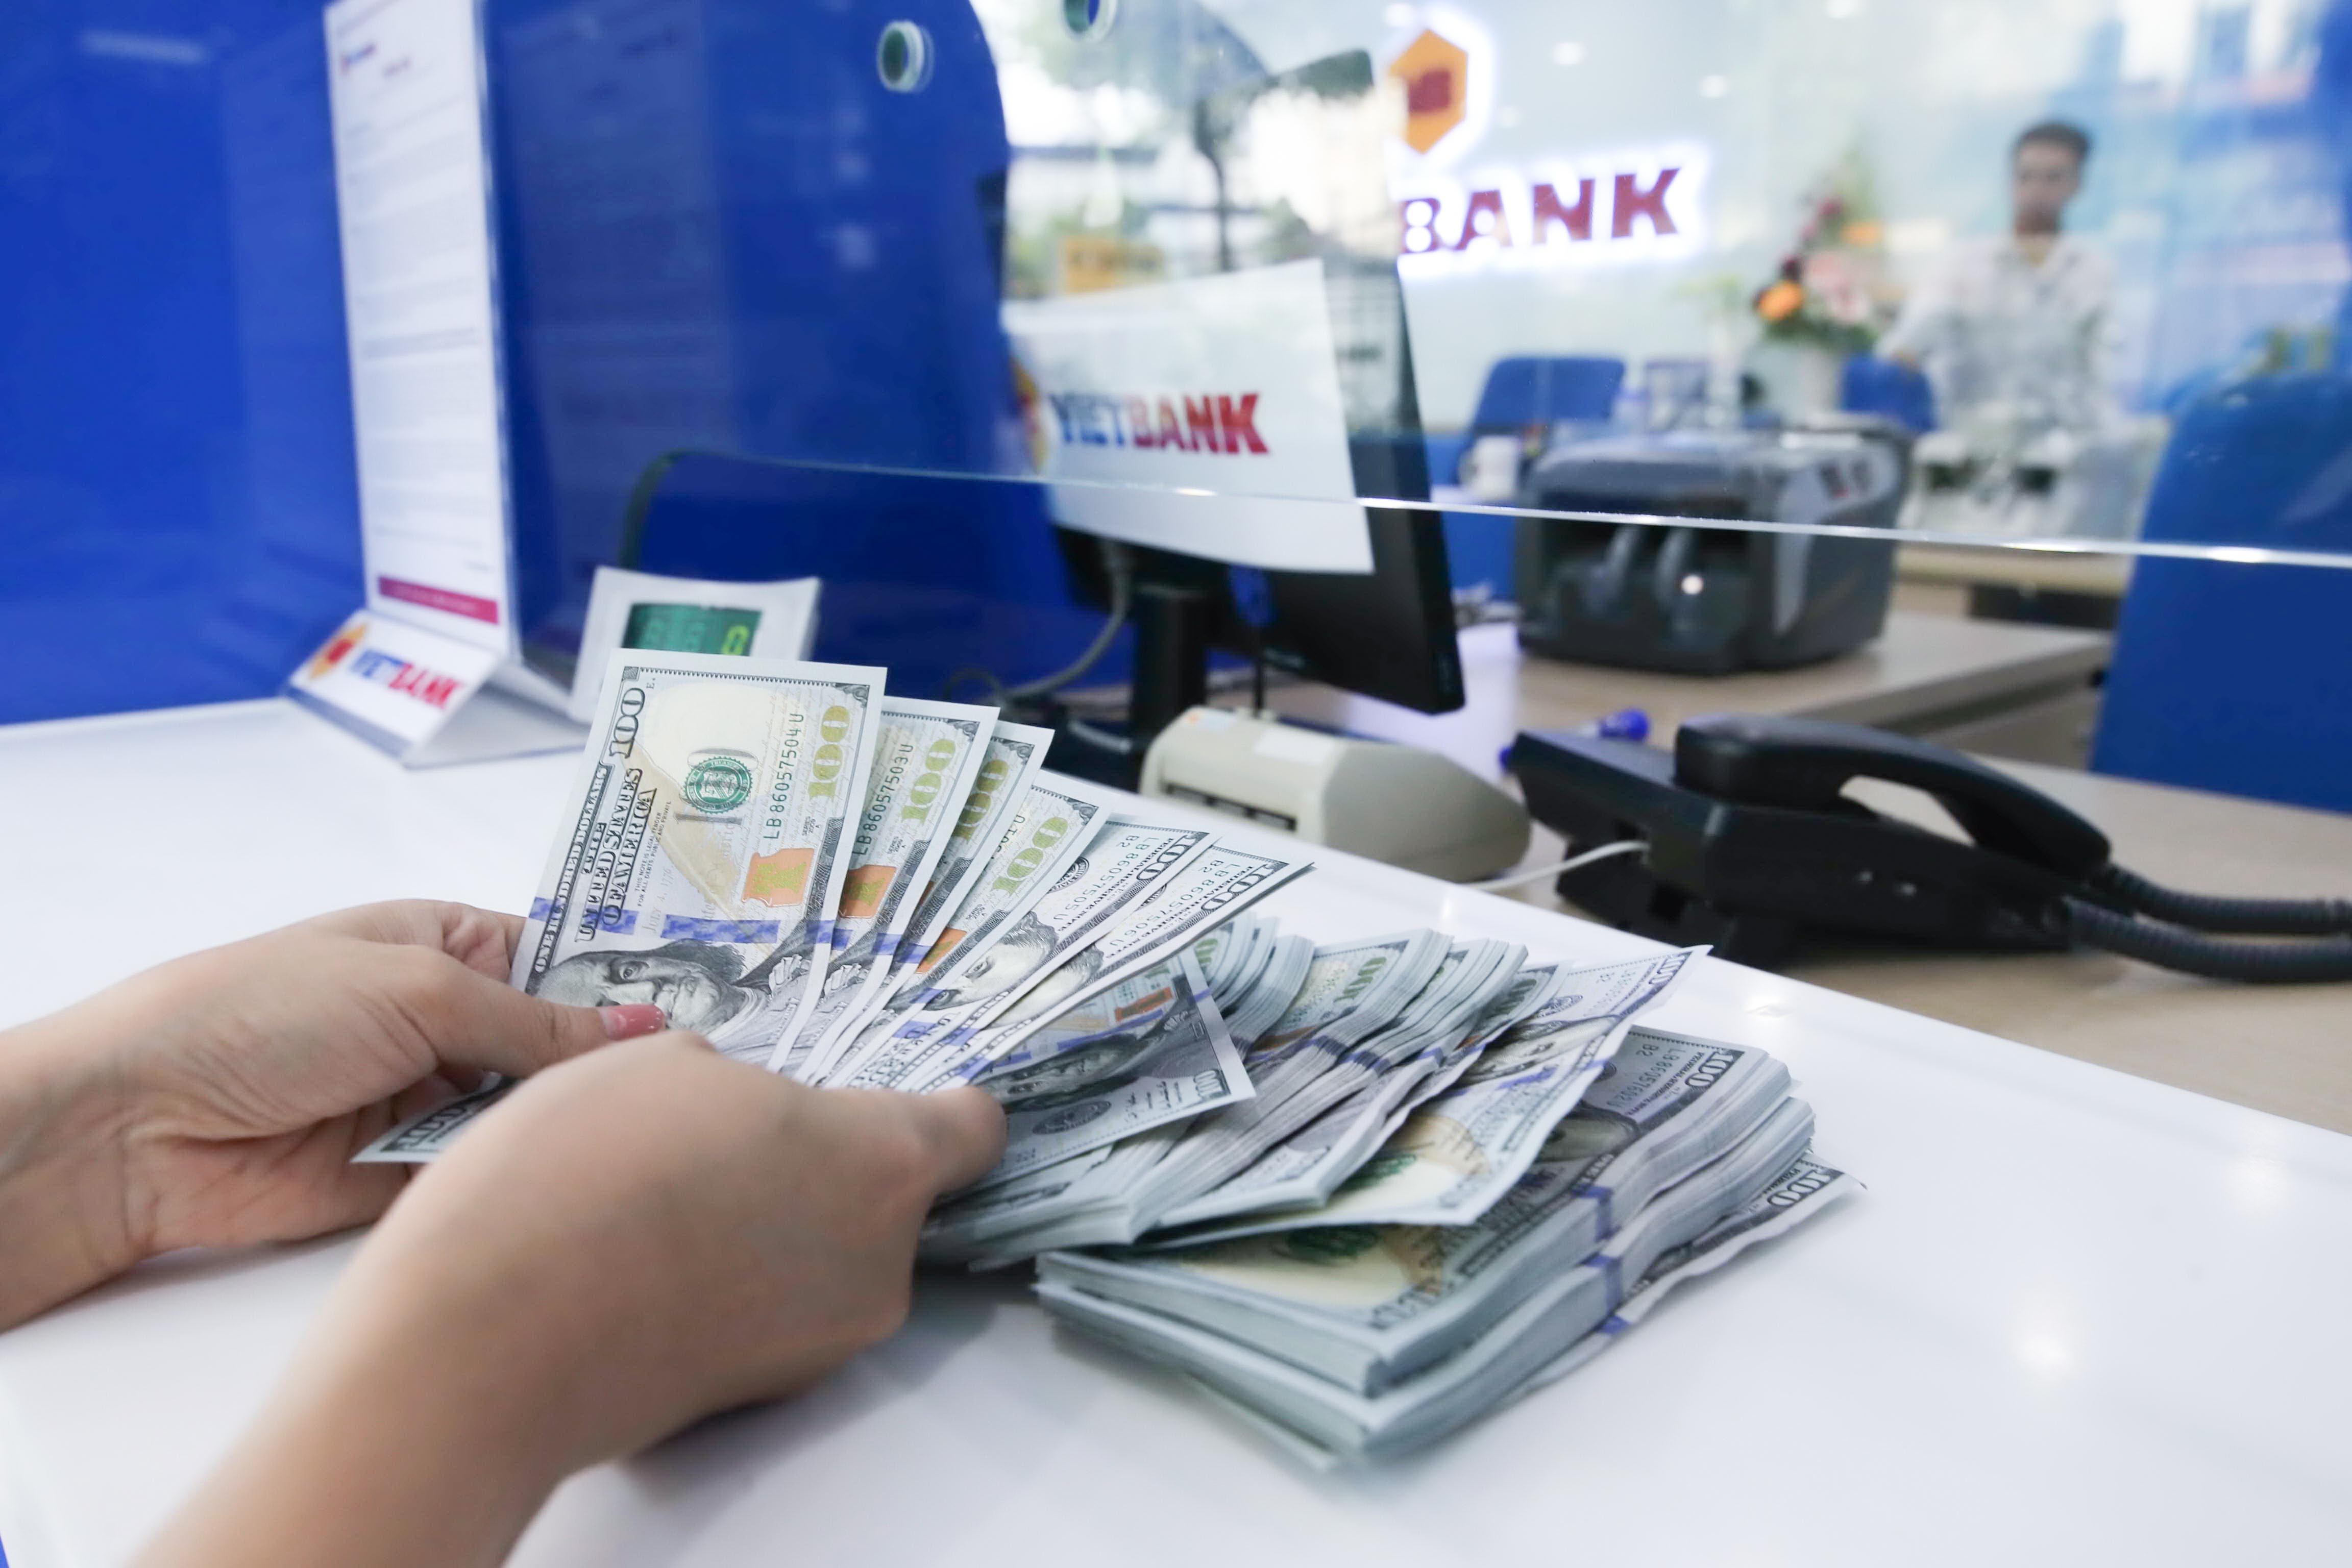 các đại lý đổi ngoại tệ chỉ được dùng Đồng Việt Nam mua ngoại tệ tiền mặt của cá nhân và không được bán ngoại tệ tiền mặt cho cá nhân lấy đồng Việt Nam.